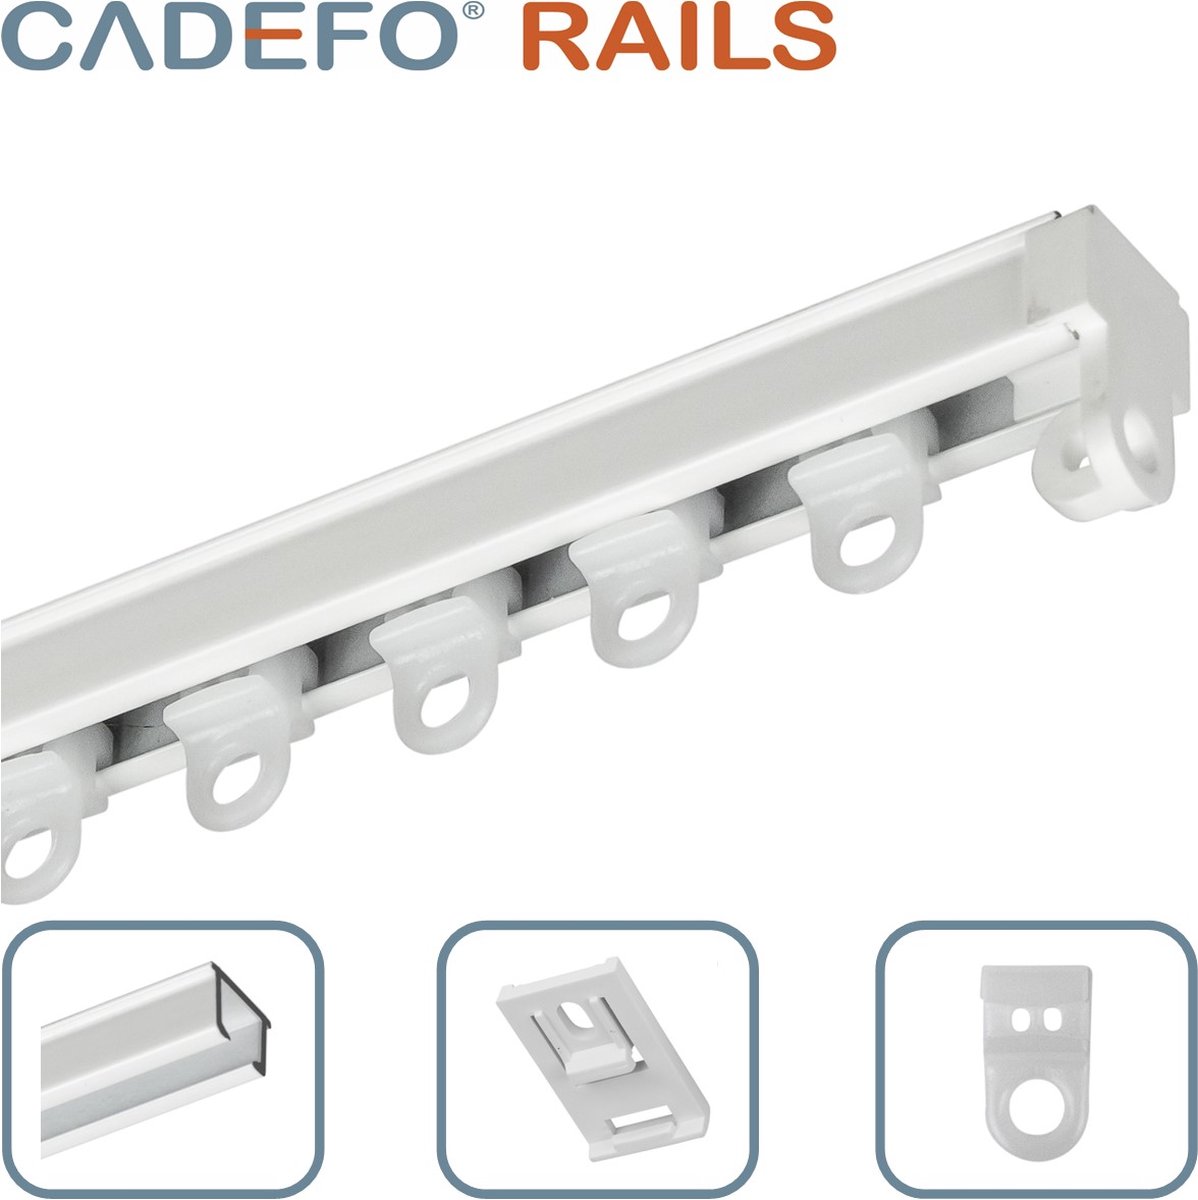 CADEFO RAILS (151 - 200 cm) Gordijnrails - Compleet op maat! - UIT 1 STUK - Leverbaar tot 6 meter - Plafondbevestiging - Lengte 197 cm